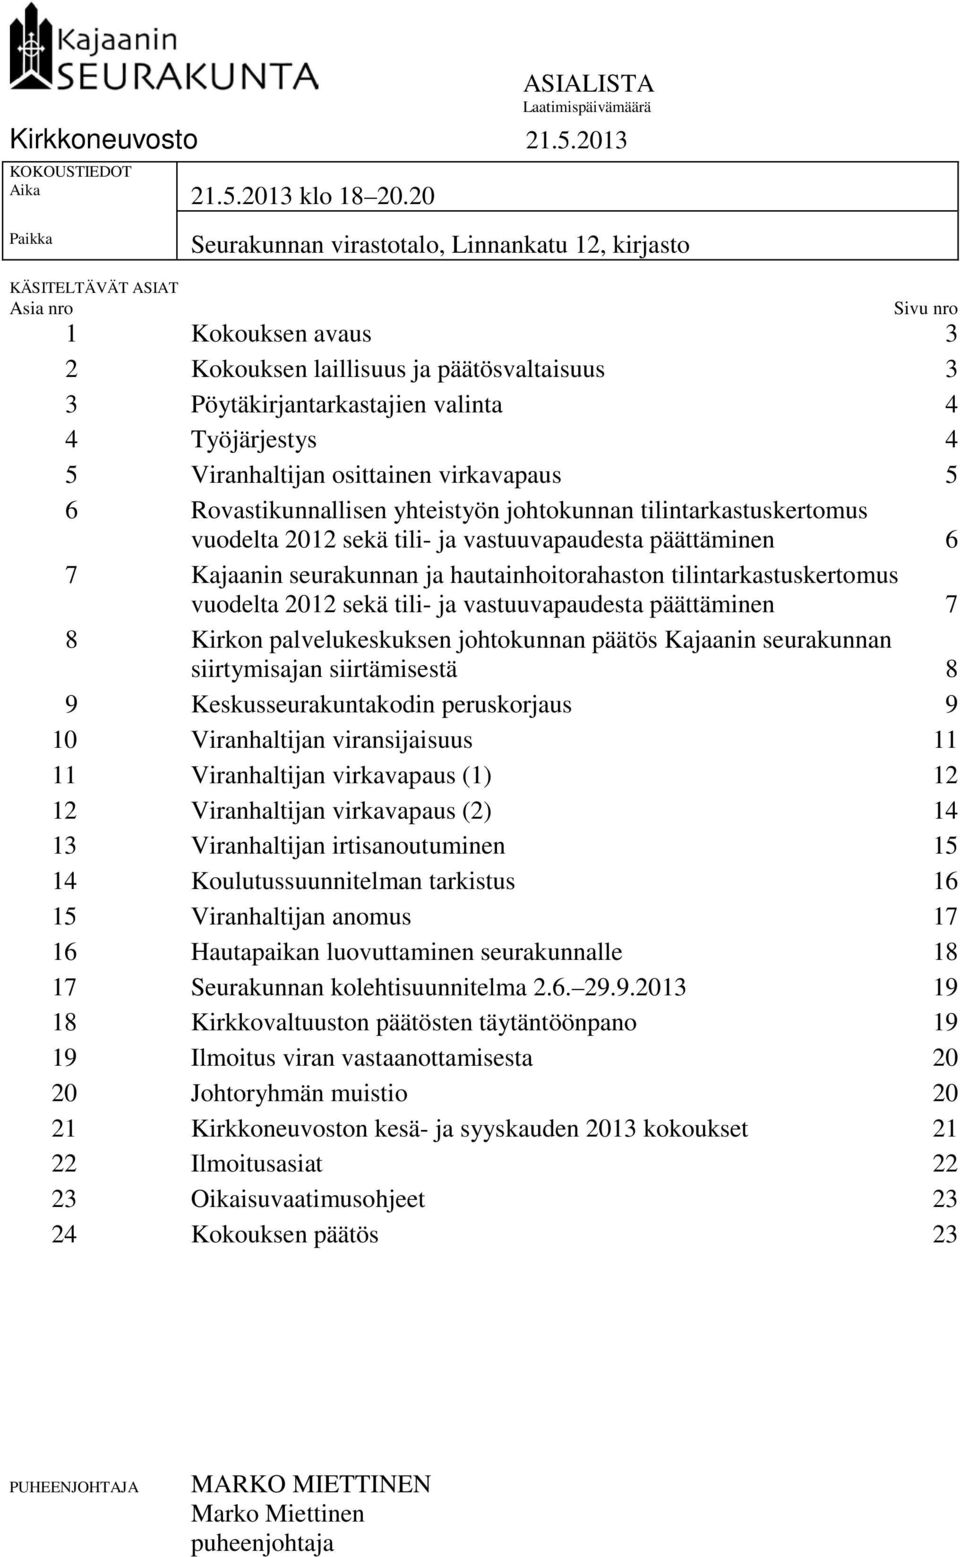 Työjärjestys 4 5 Viranhaltijan osittainen virkavapaus 5 6 Rovastikunnallisen yhteistyön johtokunnan tilintarkastuskertomus vuodelta 2012 sekä tili- ja vastuuvapaudesta päättäminen 6 7 Kajaanin